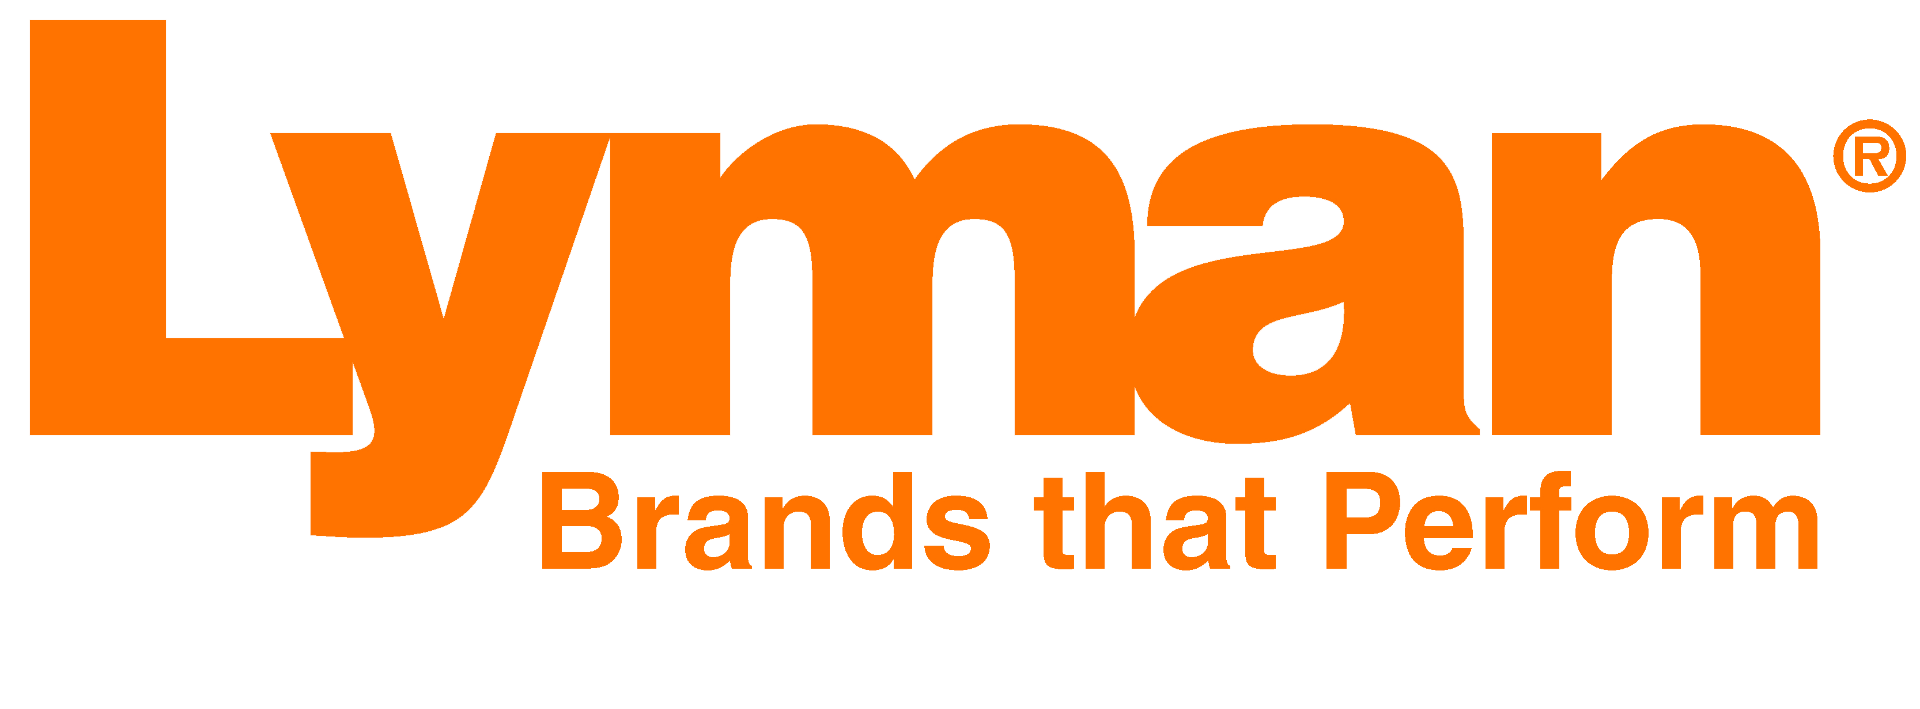 lyman_logo_orange